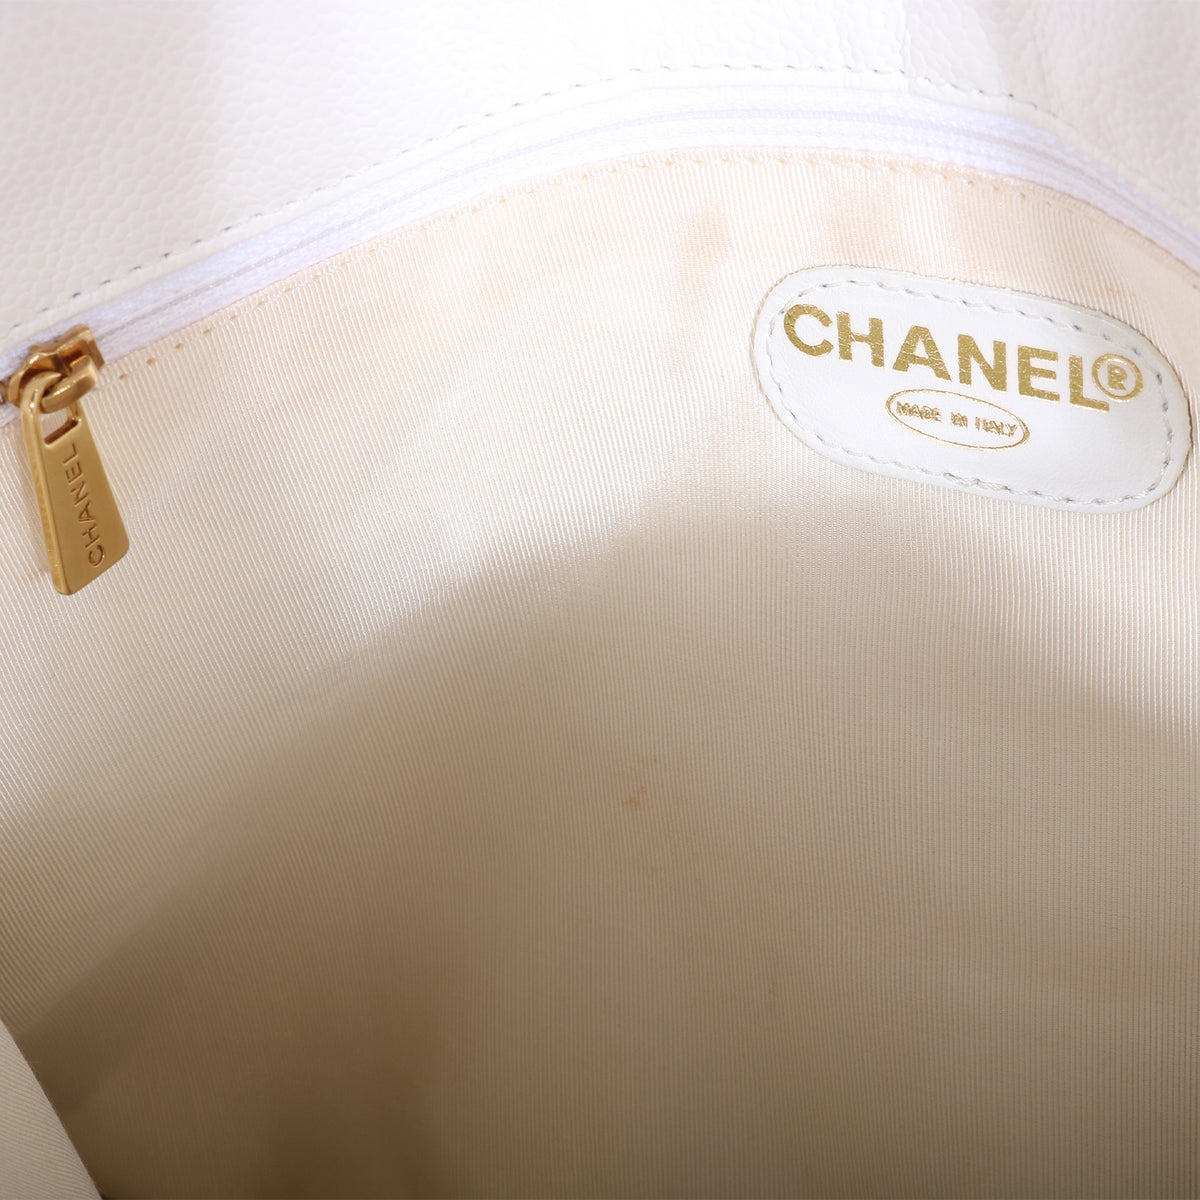 Vintage Chanel Leather Fold Over Crossbody Shoulder Leather Bag